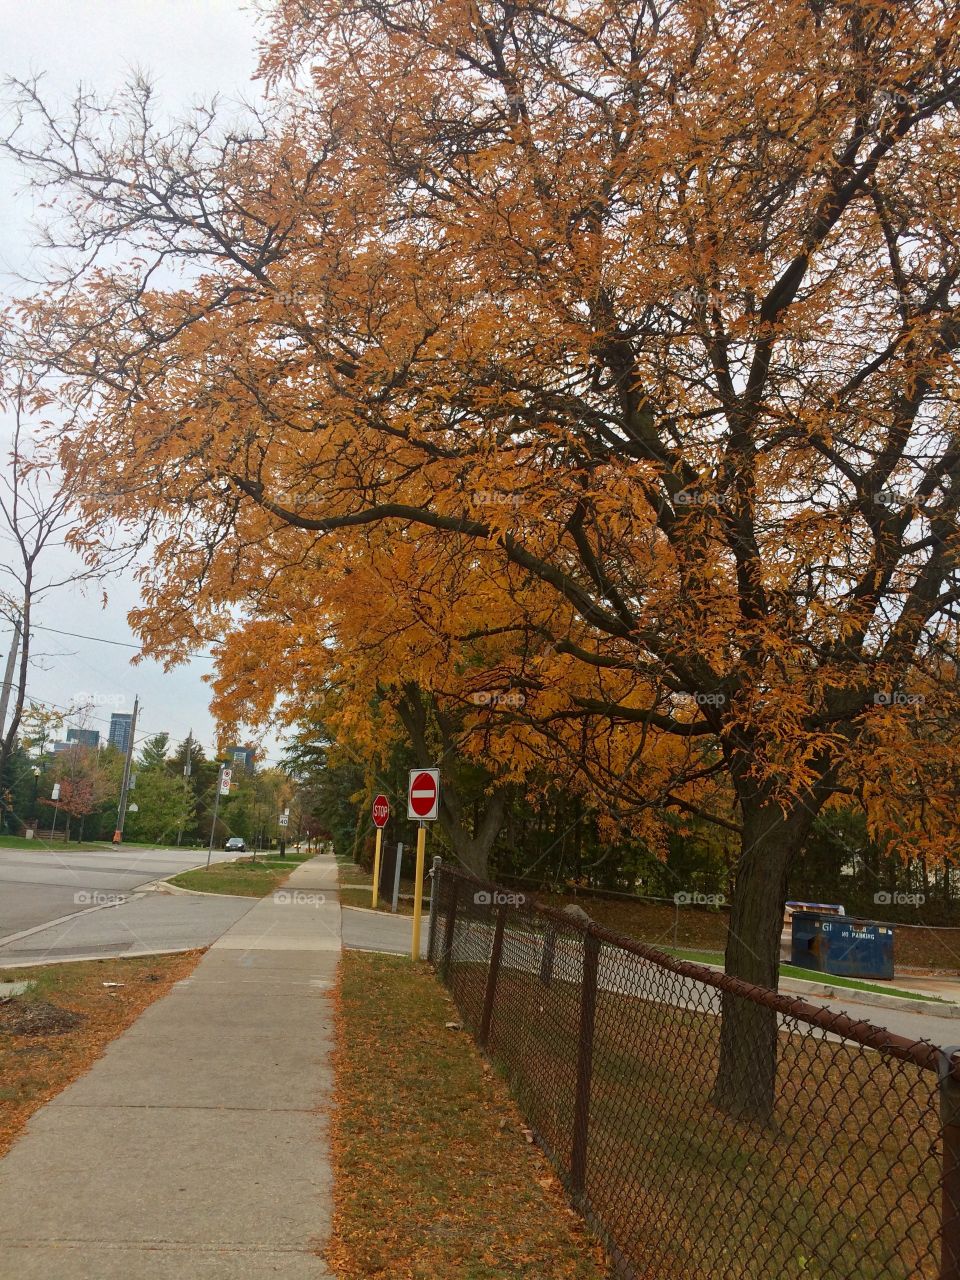 Autumn in Toronto 